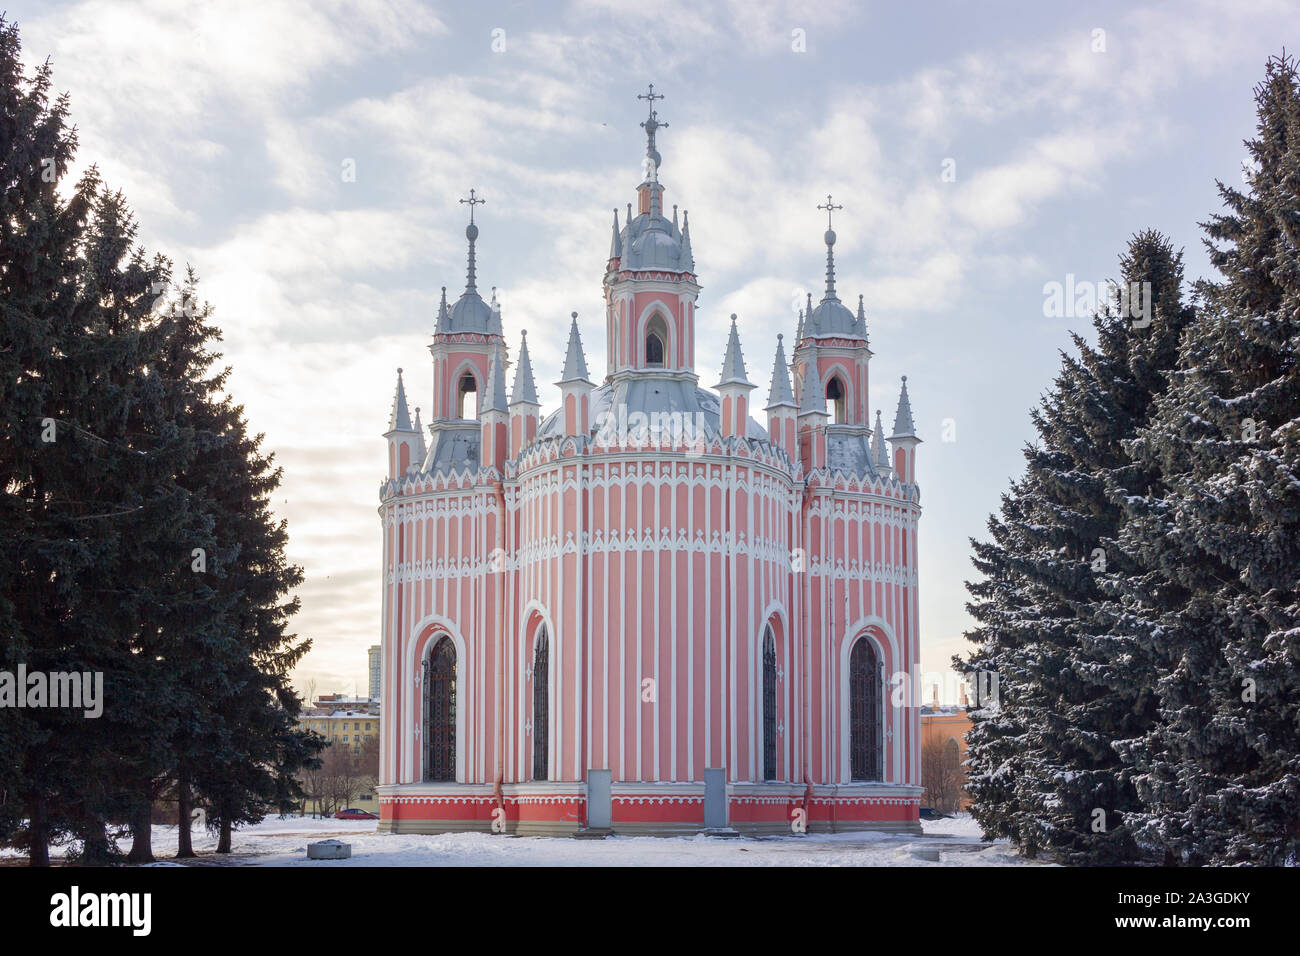 La Iglesia de San Juan Bautista, conocido más comúnmente como iglesia, cerca Chesme Moskovskaya en un día de invierno en San Petersburgo, Rusia Foto de stock